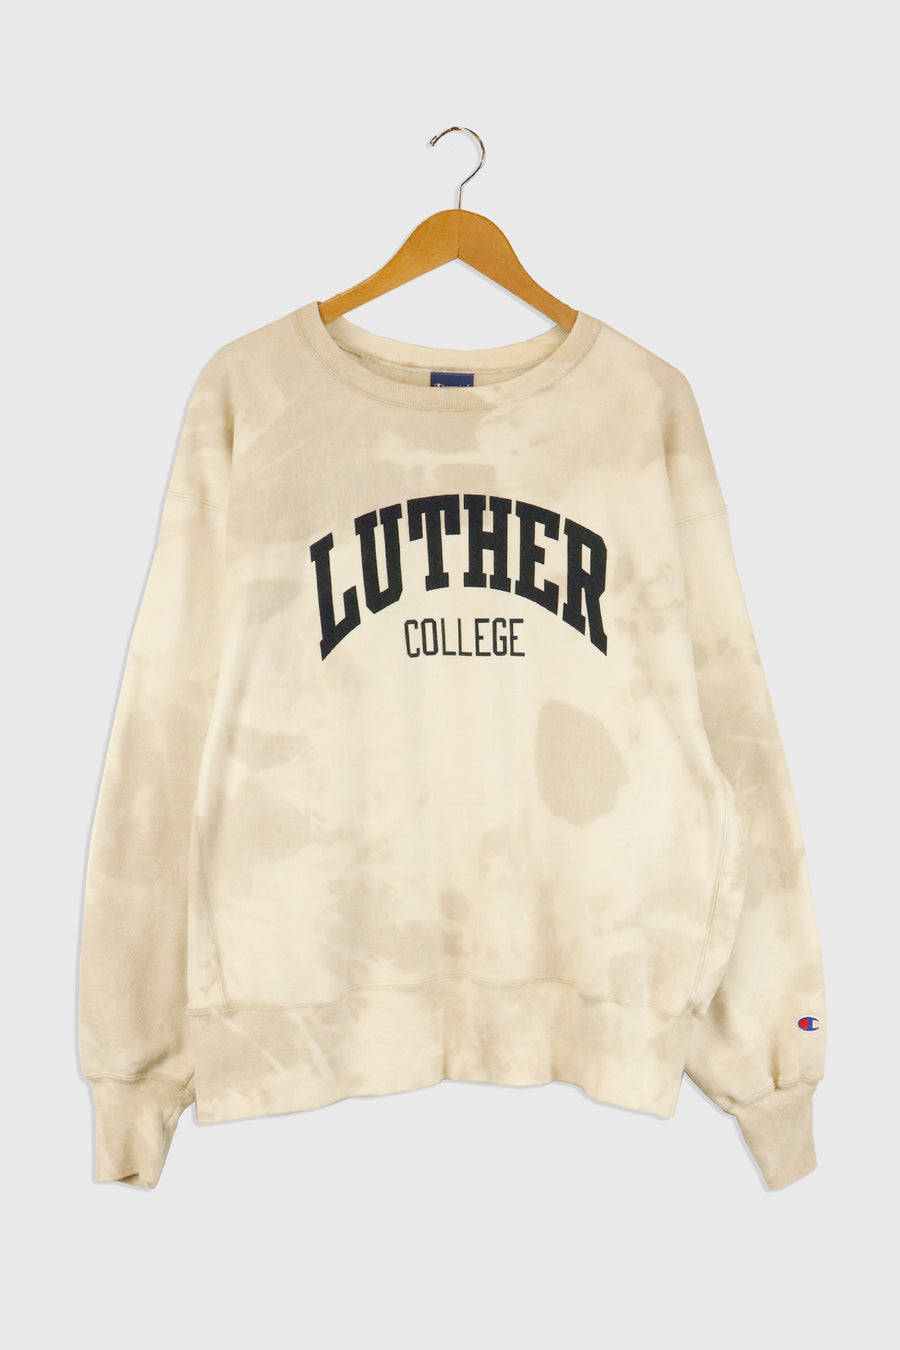 Vintage Luther College Sweatshirt Sz XL